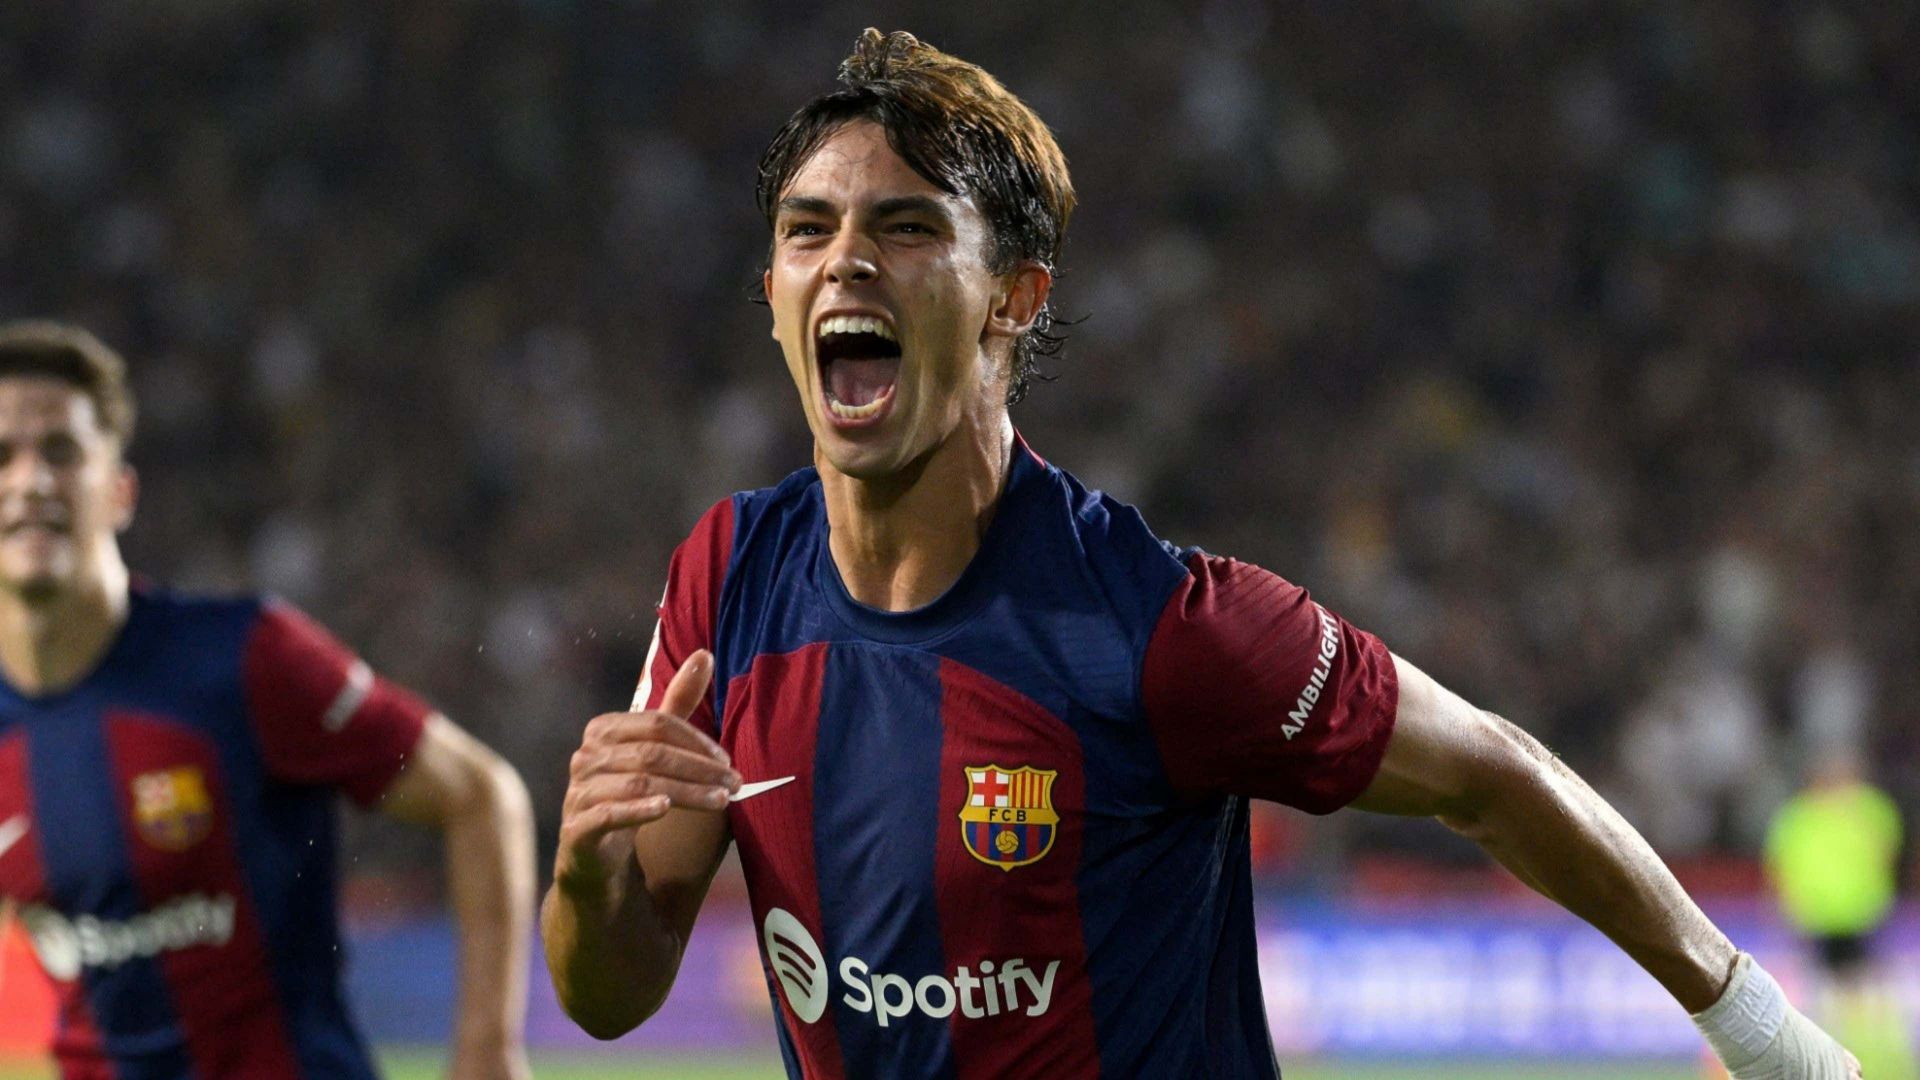 Joao Felix celebrating a goal for Barcelona.